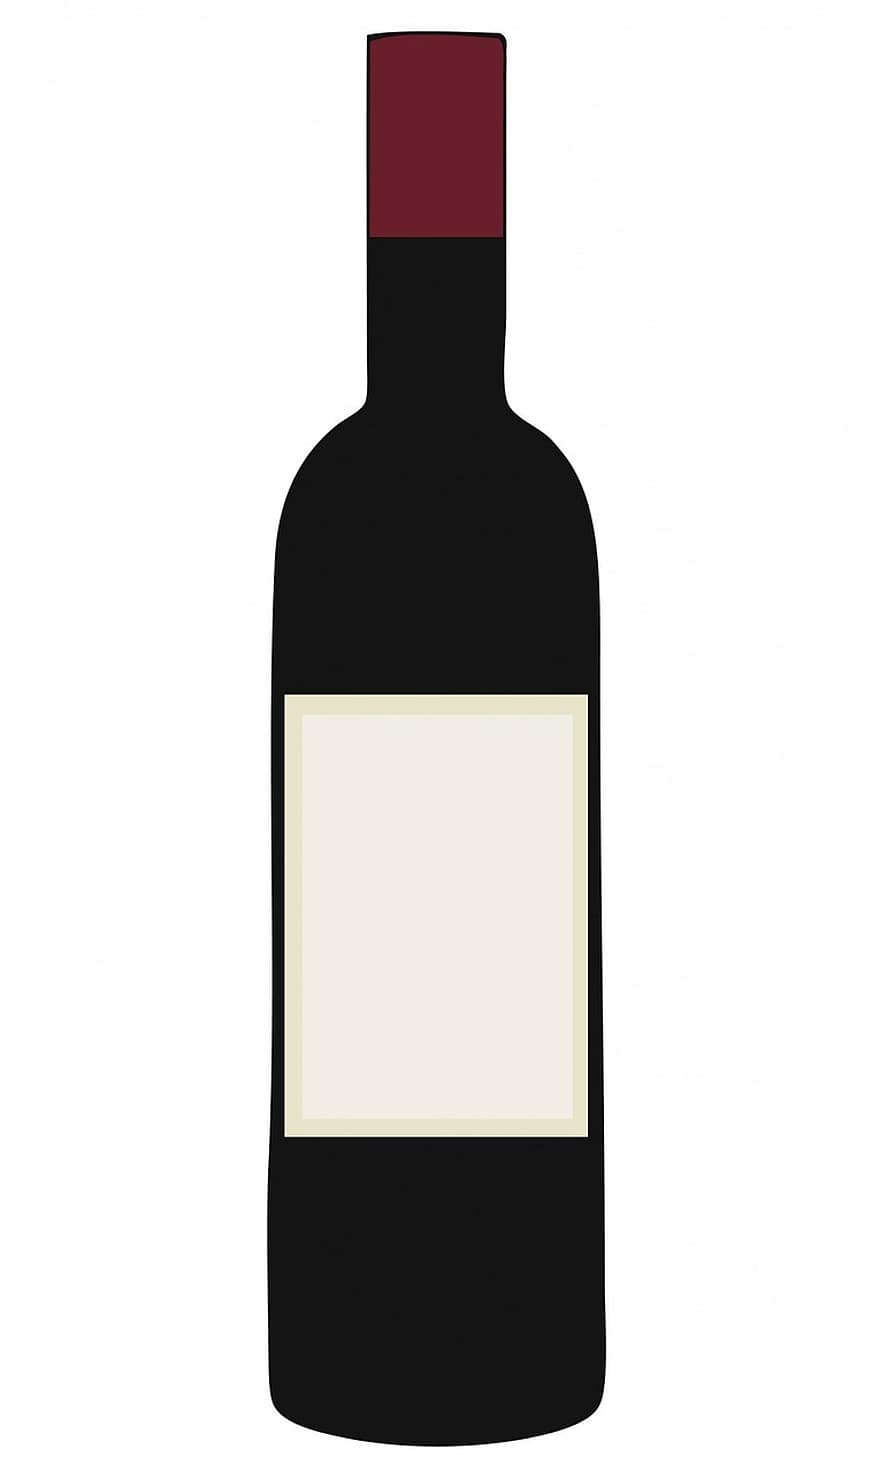 vīns, pudele, sarkans, vīna pudele, sarkanvīns, tukša, marķējums, tukša etiķete, Ilustrācijas stikls